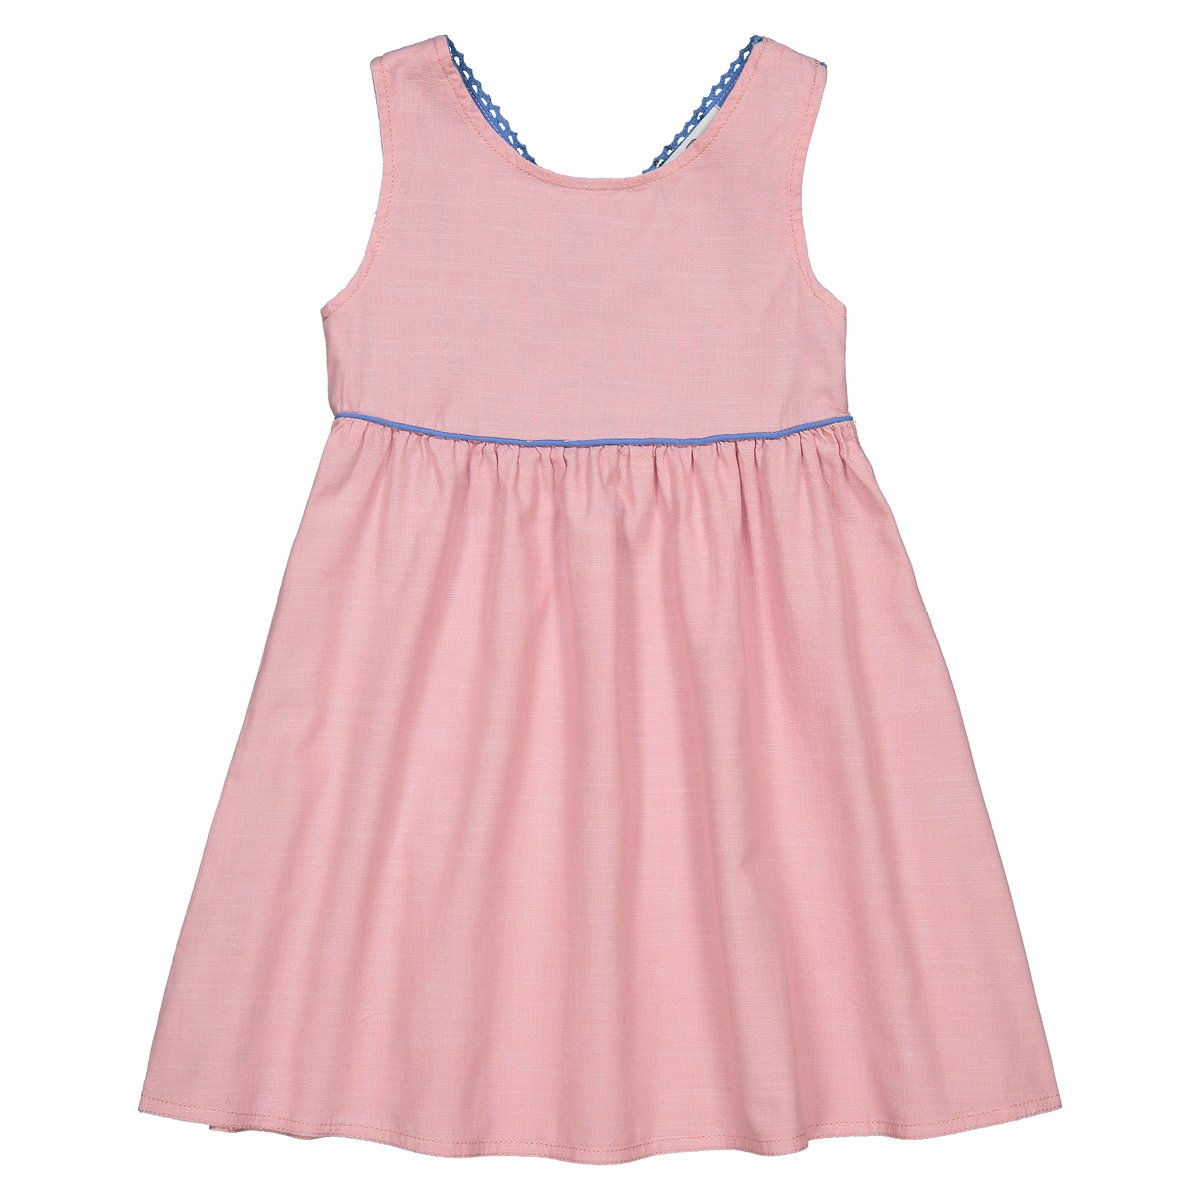 Платье La Redoute Без рукавов 12 лет -150 см розовый